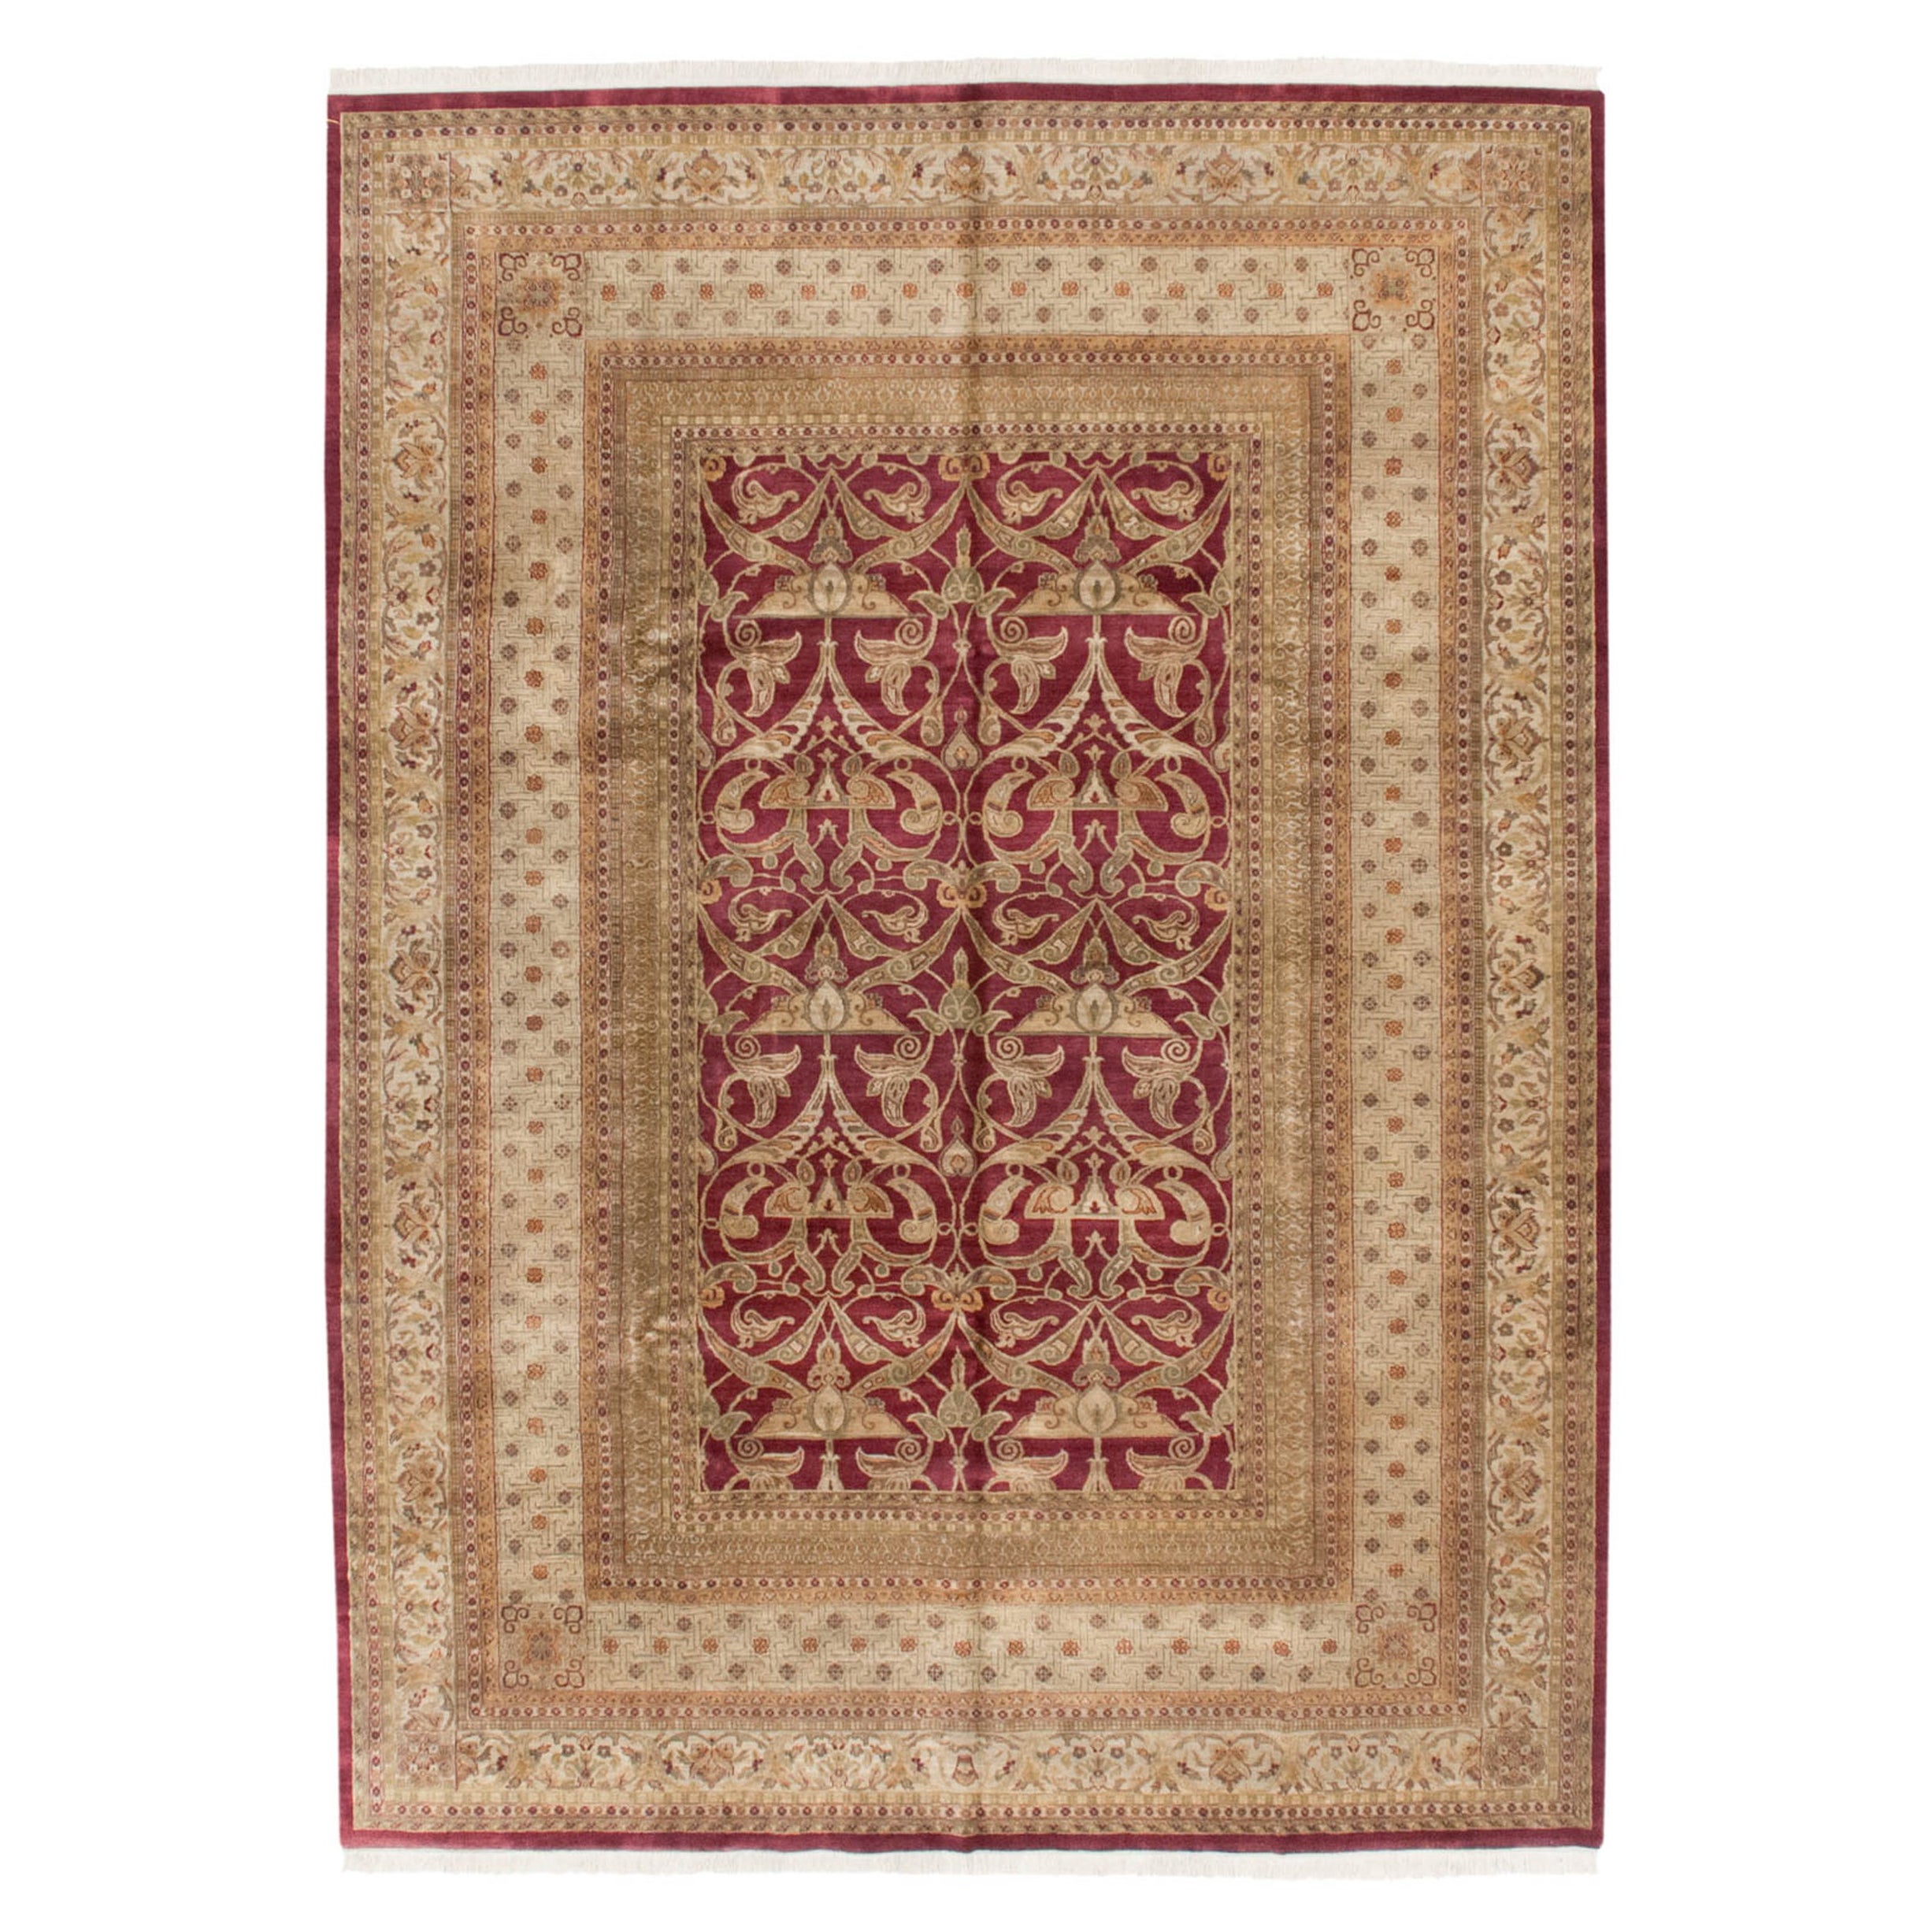 Indischer Jugendstil-Teppich im Art nouveau-Stil